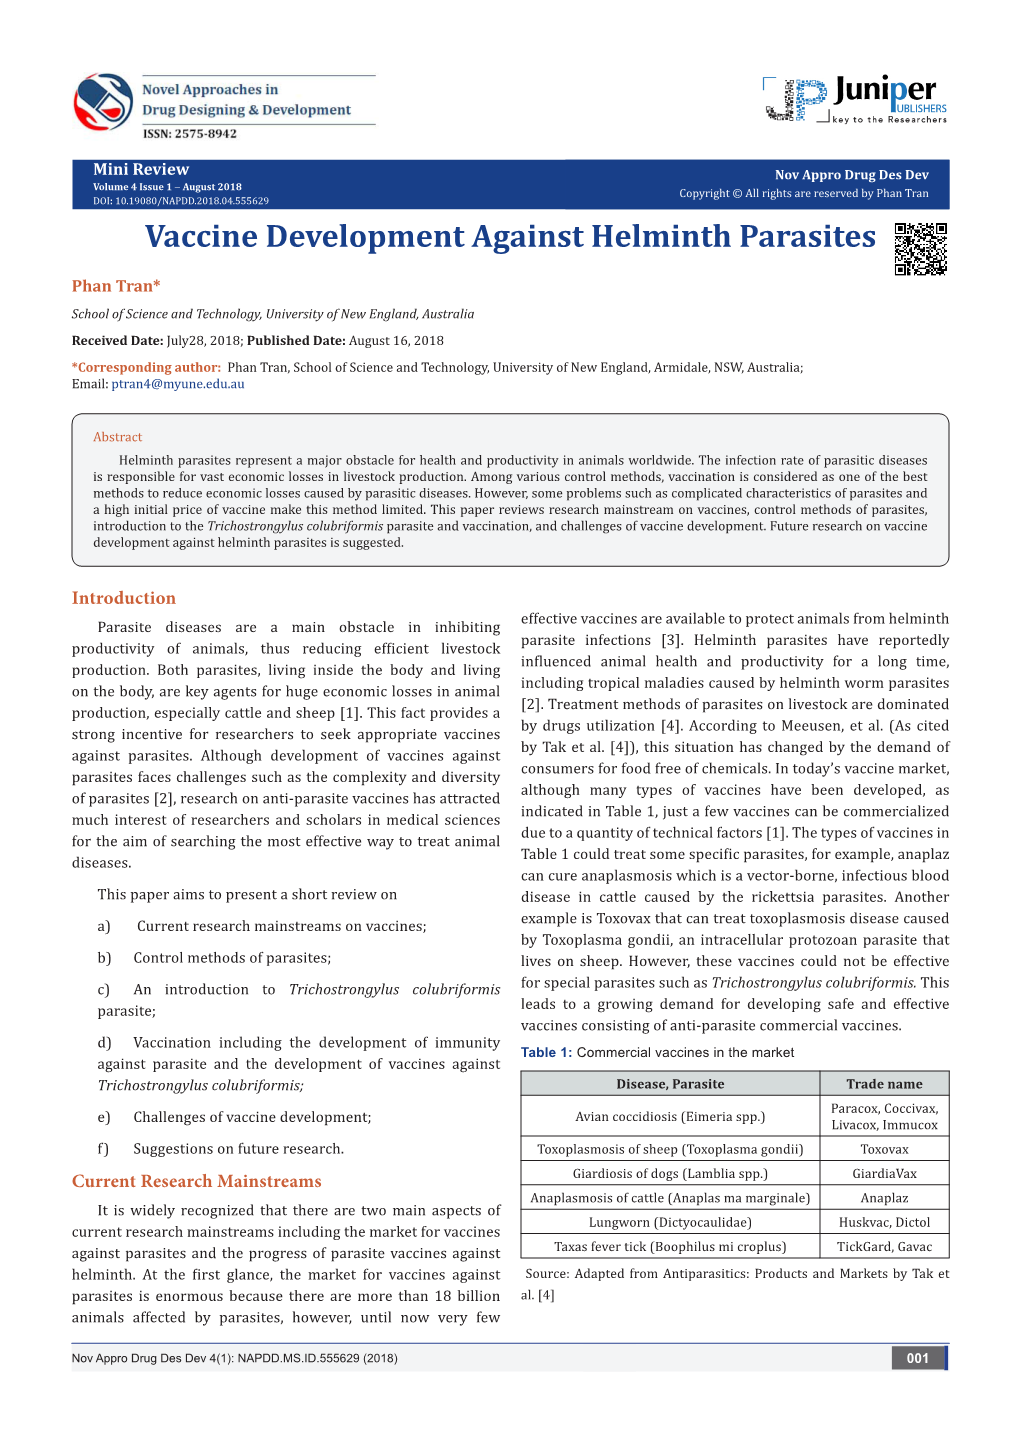 Vaccine Development Against Helminth Parasites